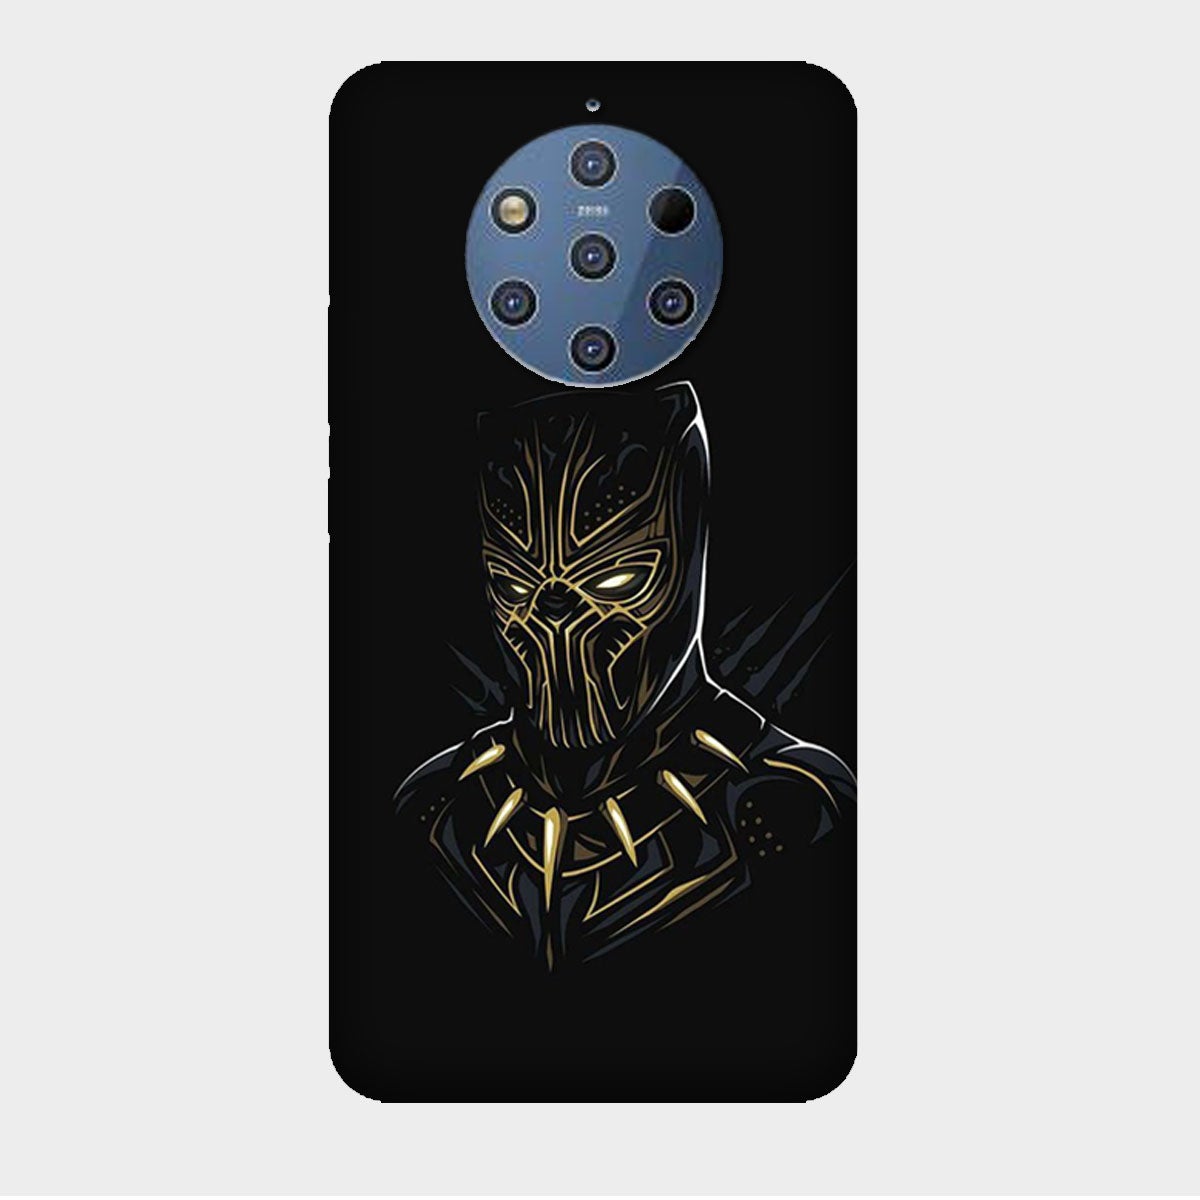 Black Panther - Golden & Black - Mobile Phone Cover - Hard Case